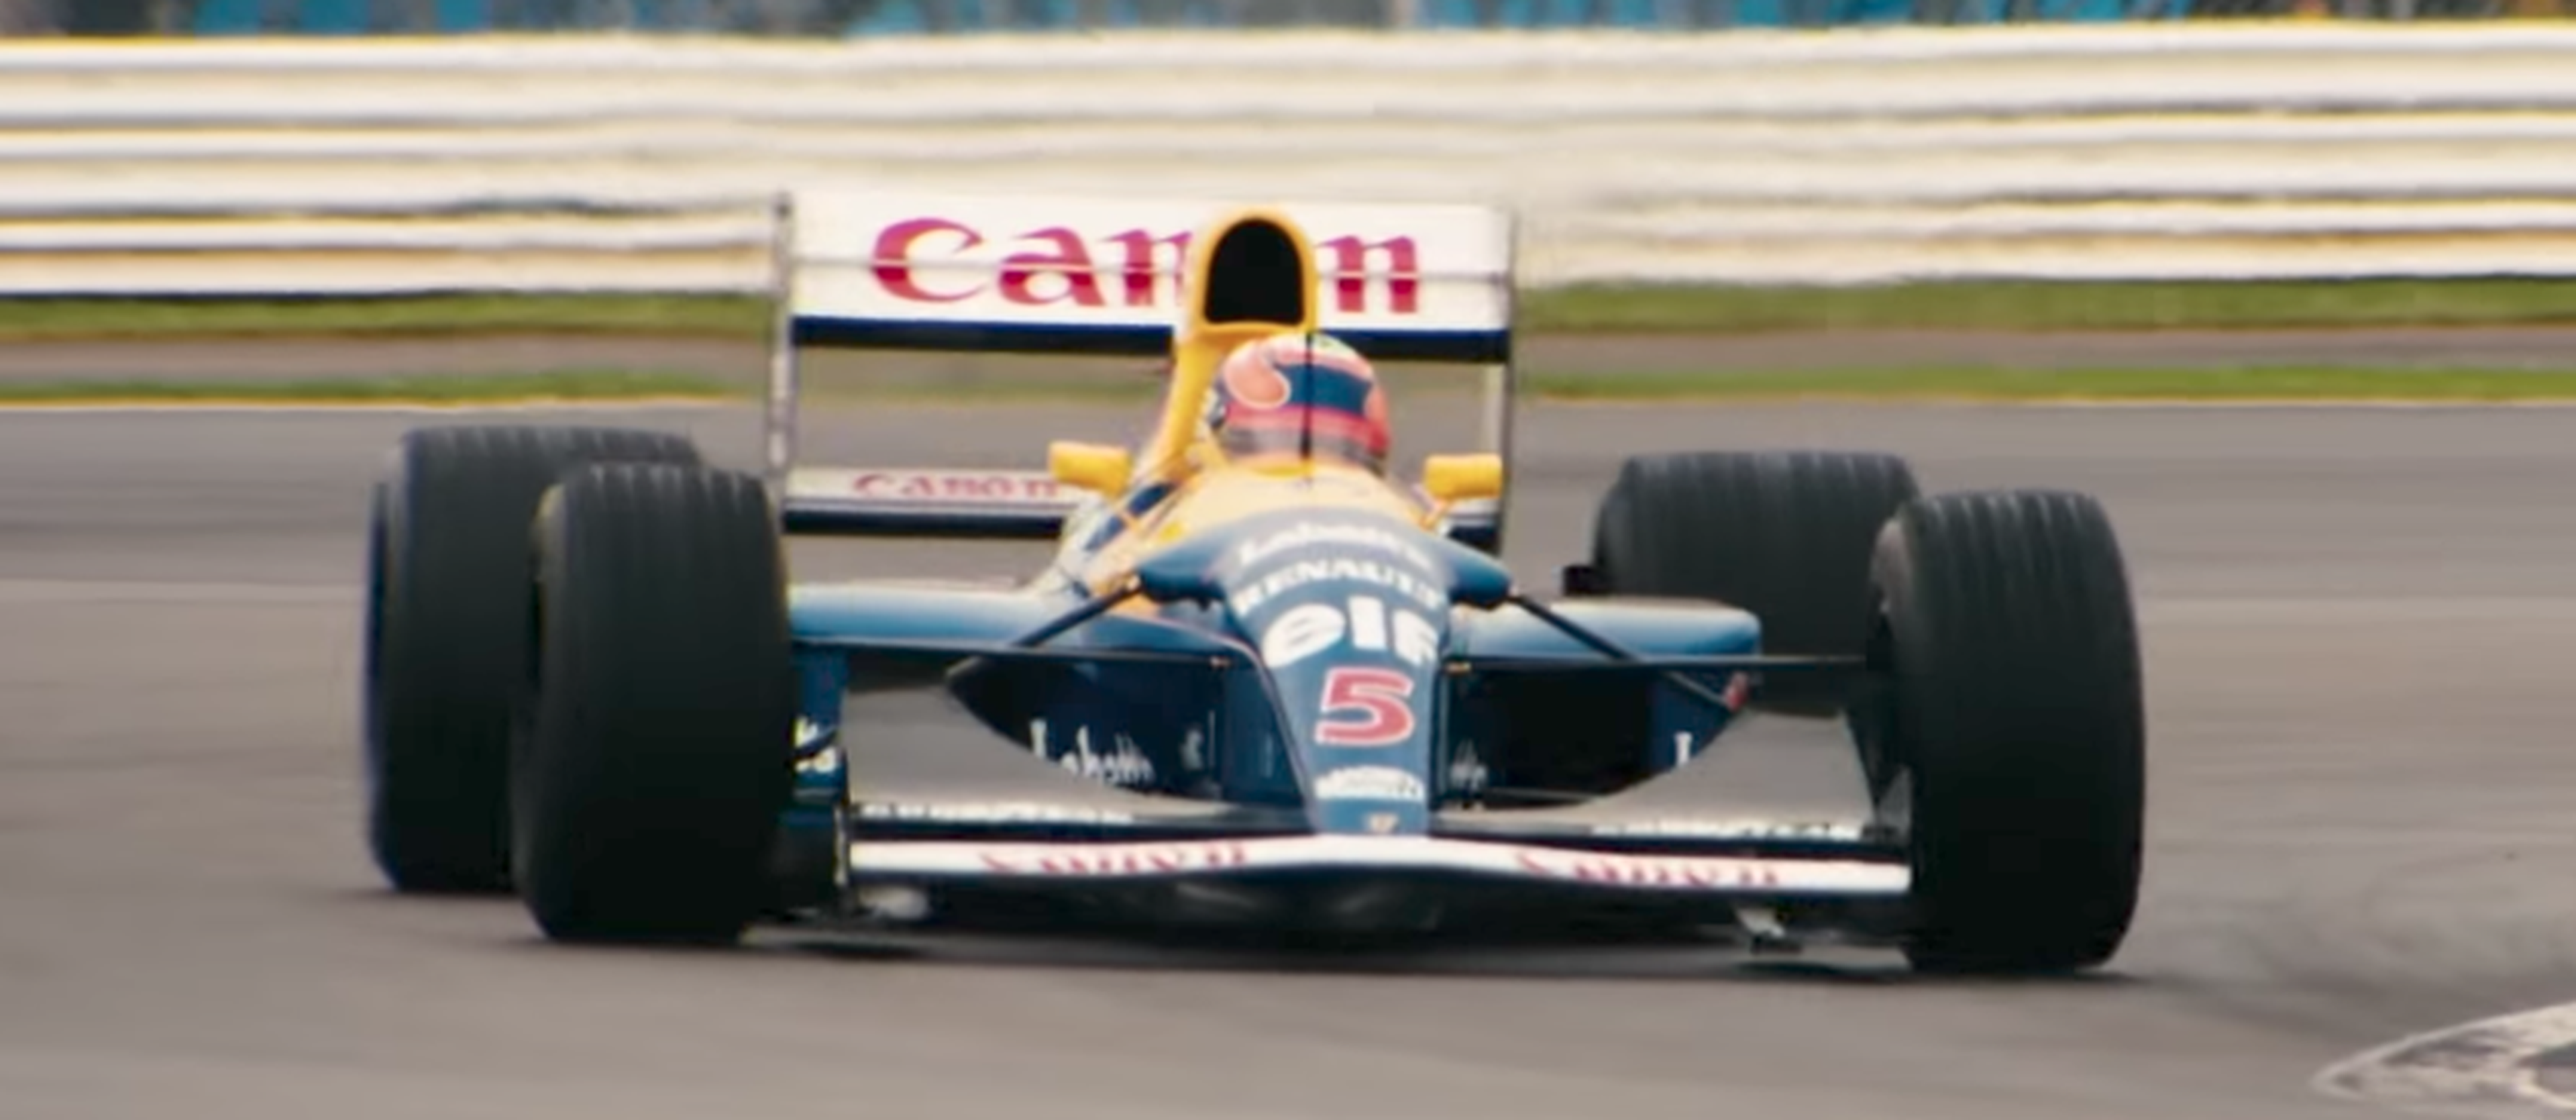 VÍDEO: 40 años de sonidos Williams, ¡historia de la F1! [TG]